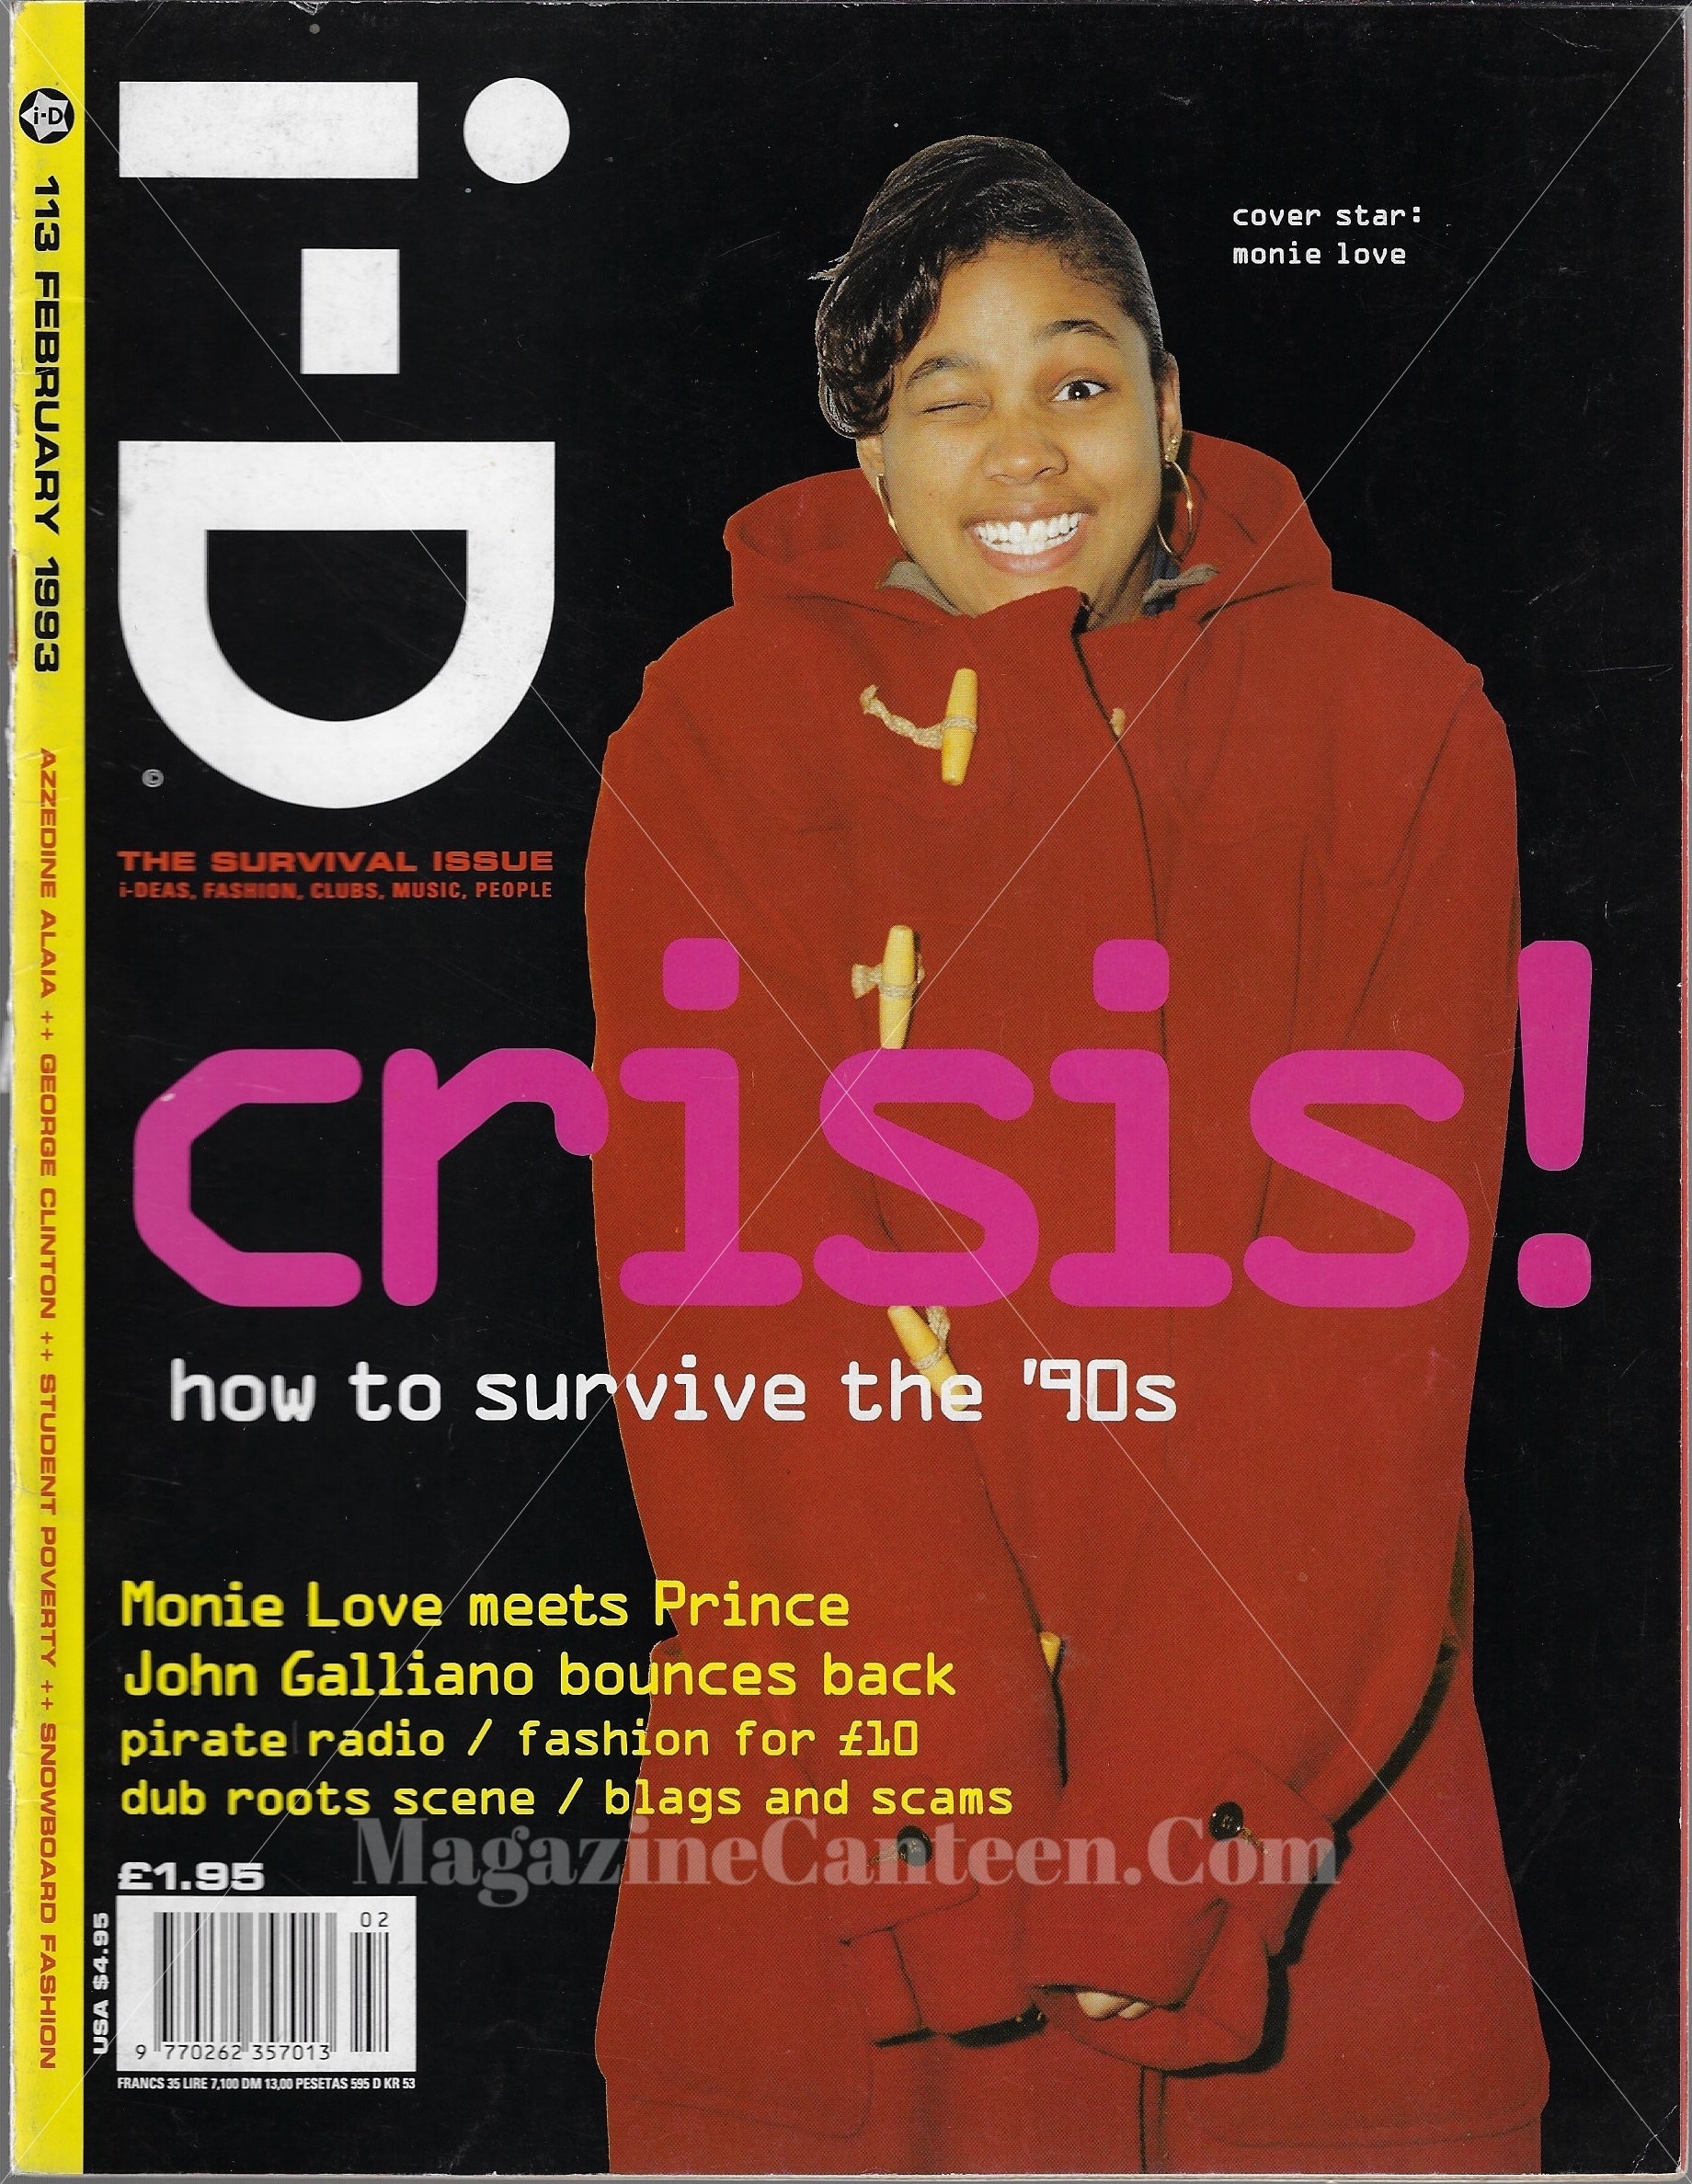 I-D Magazine 113 - Monie Love 1993